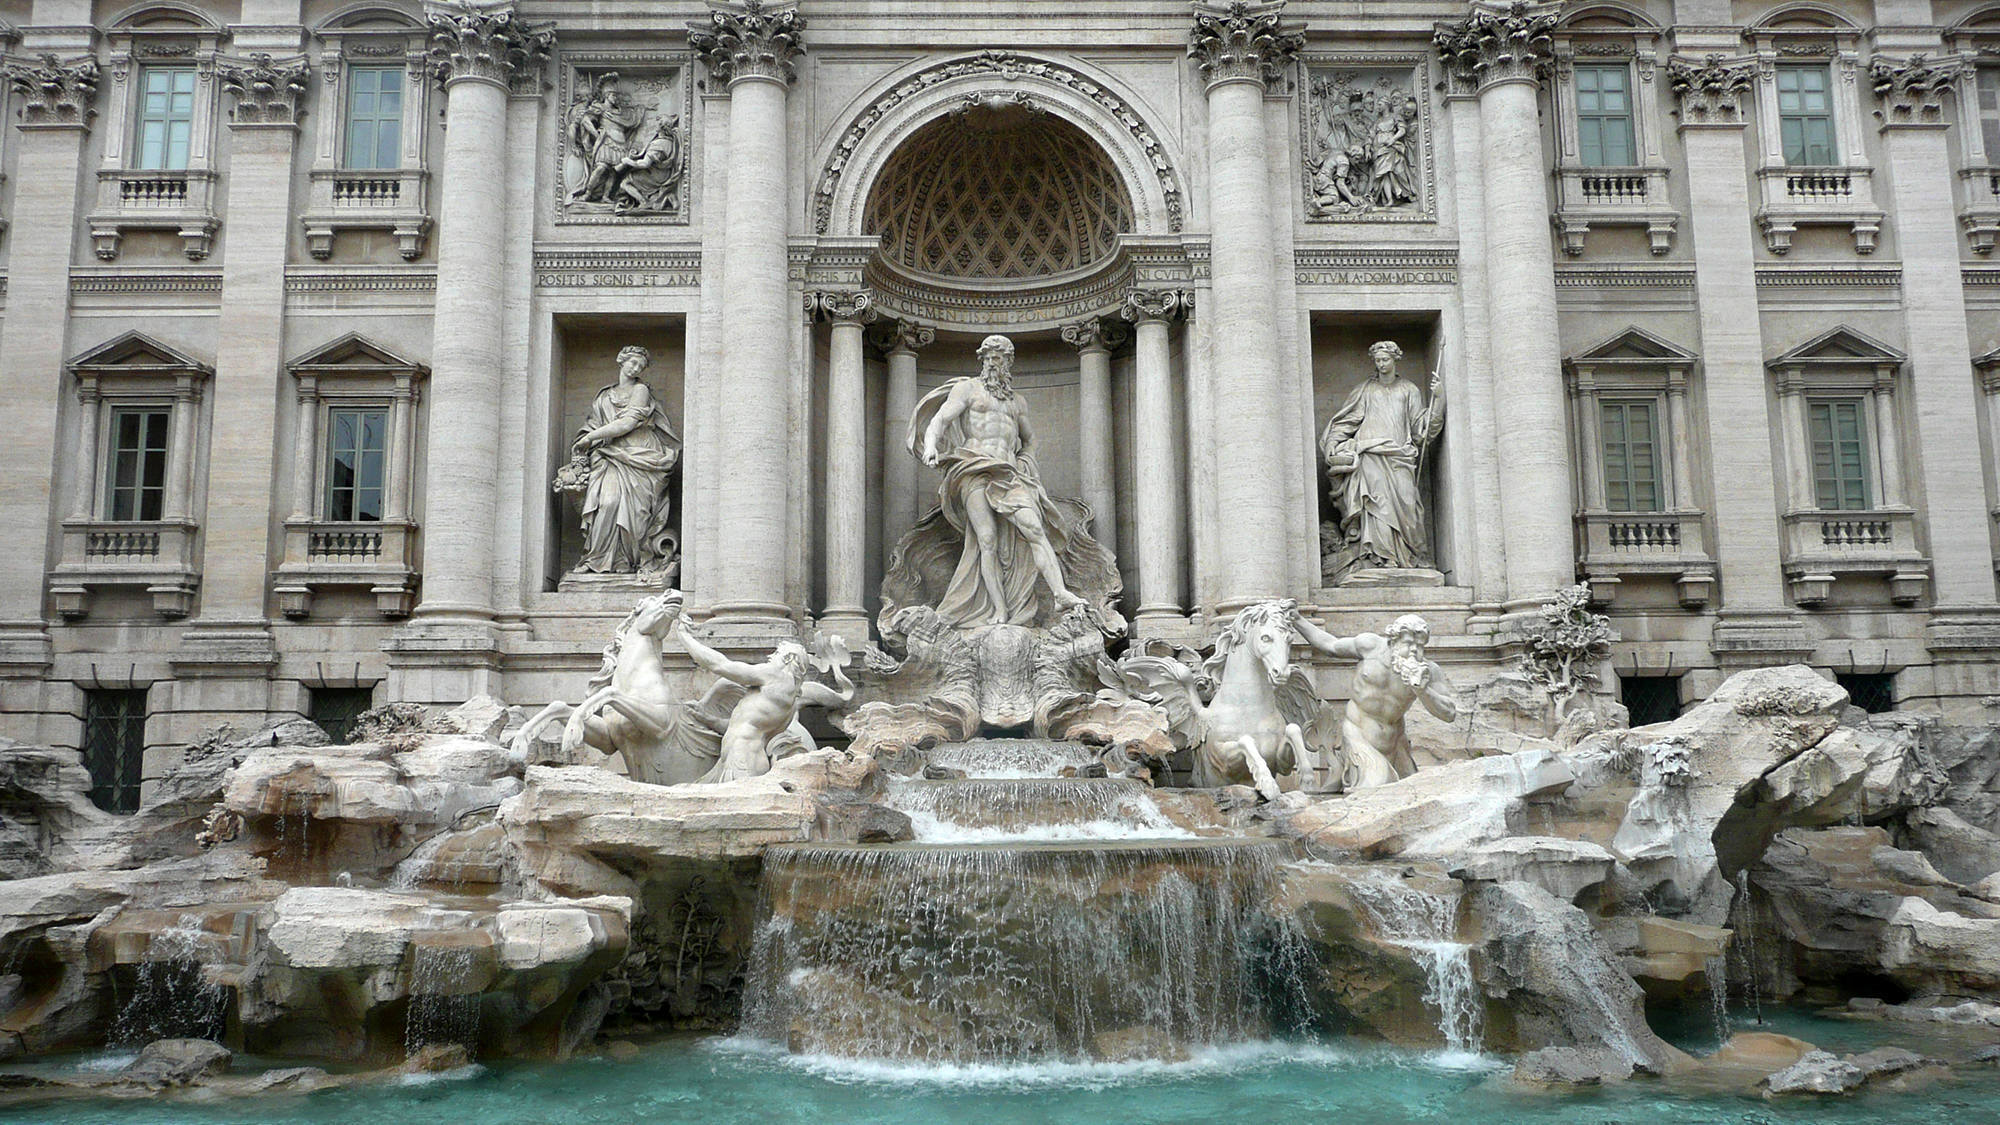 Fontana du Trevi in Rome, Italy